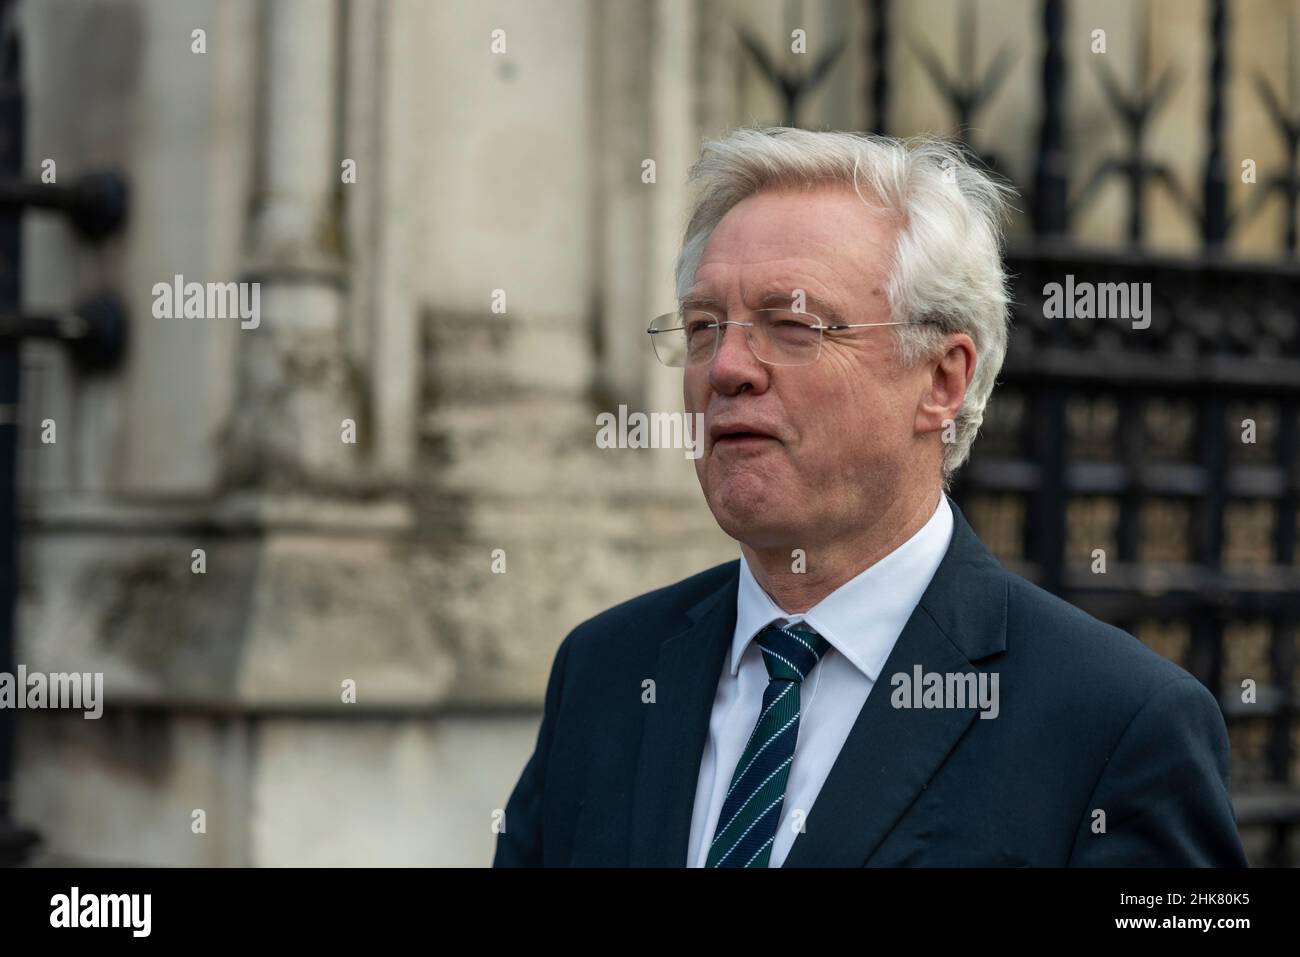 Le député David Davis arrive au Parlement et tire le visage des manifestants anti-Brexit Banque D'Images